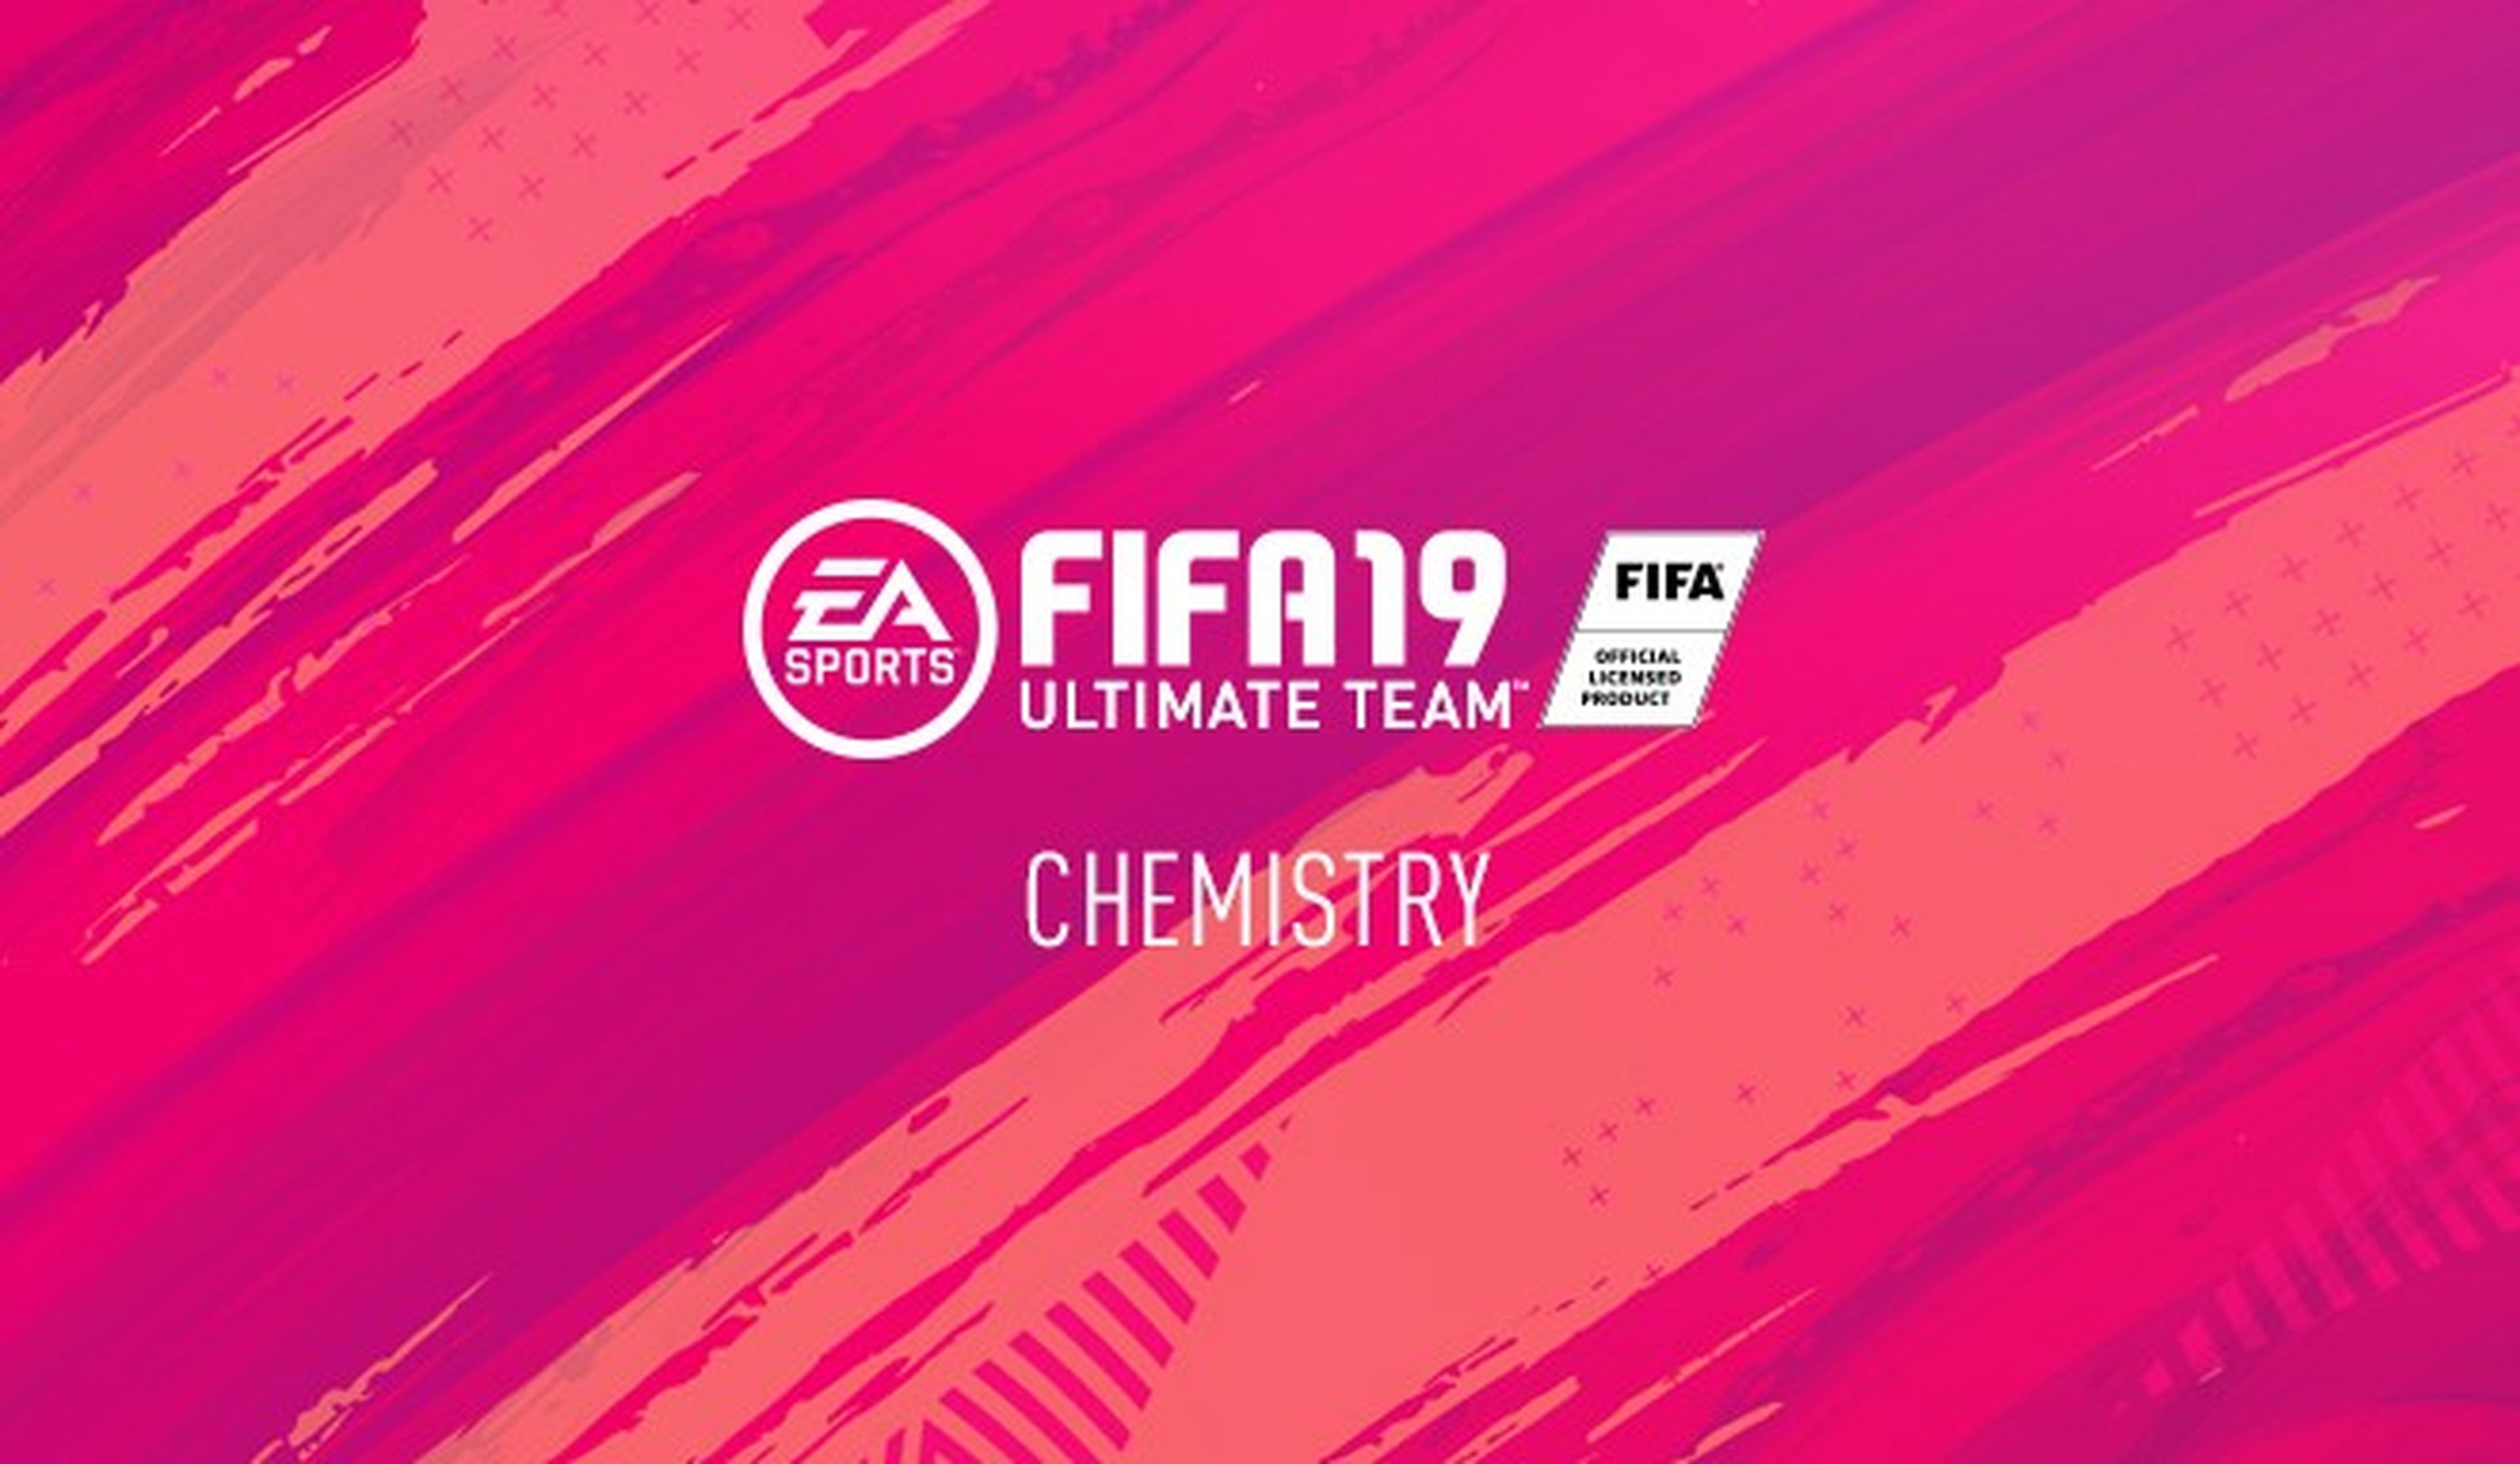 Química FIFA 19